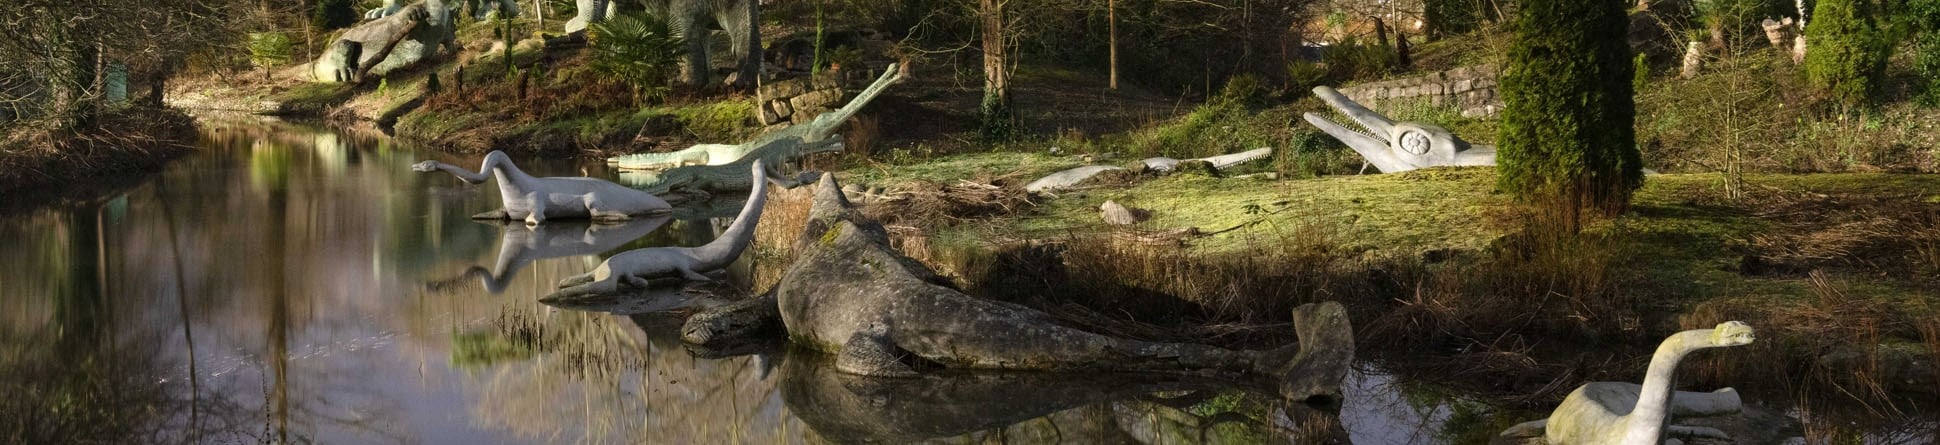 Dinosaur statues at Crystal Palace